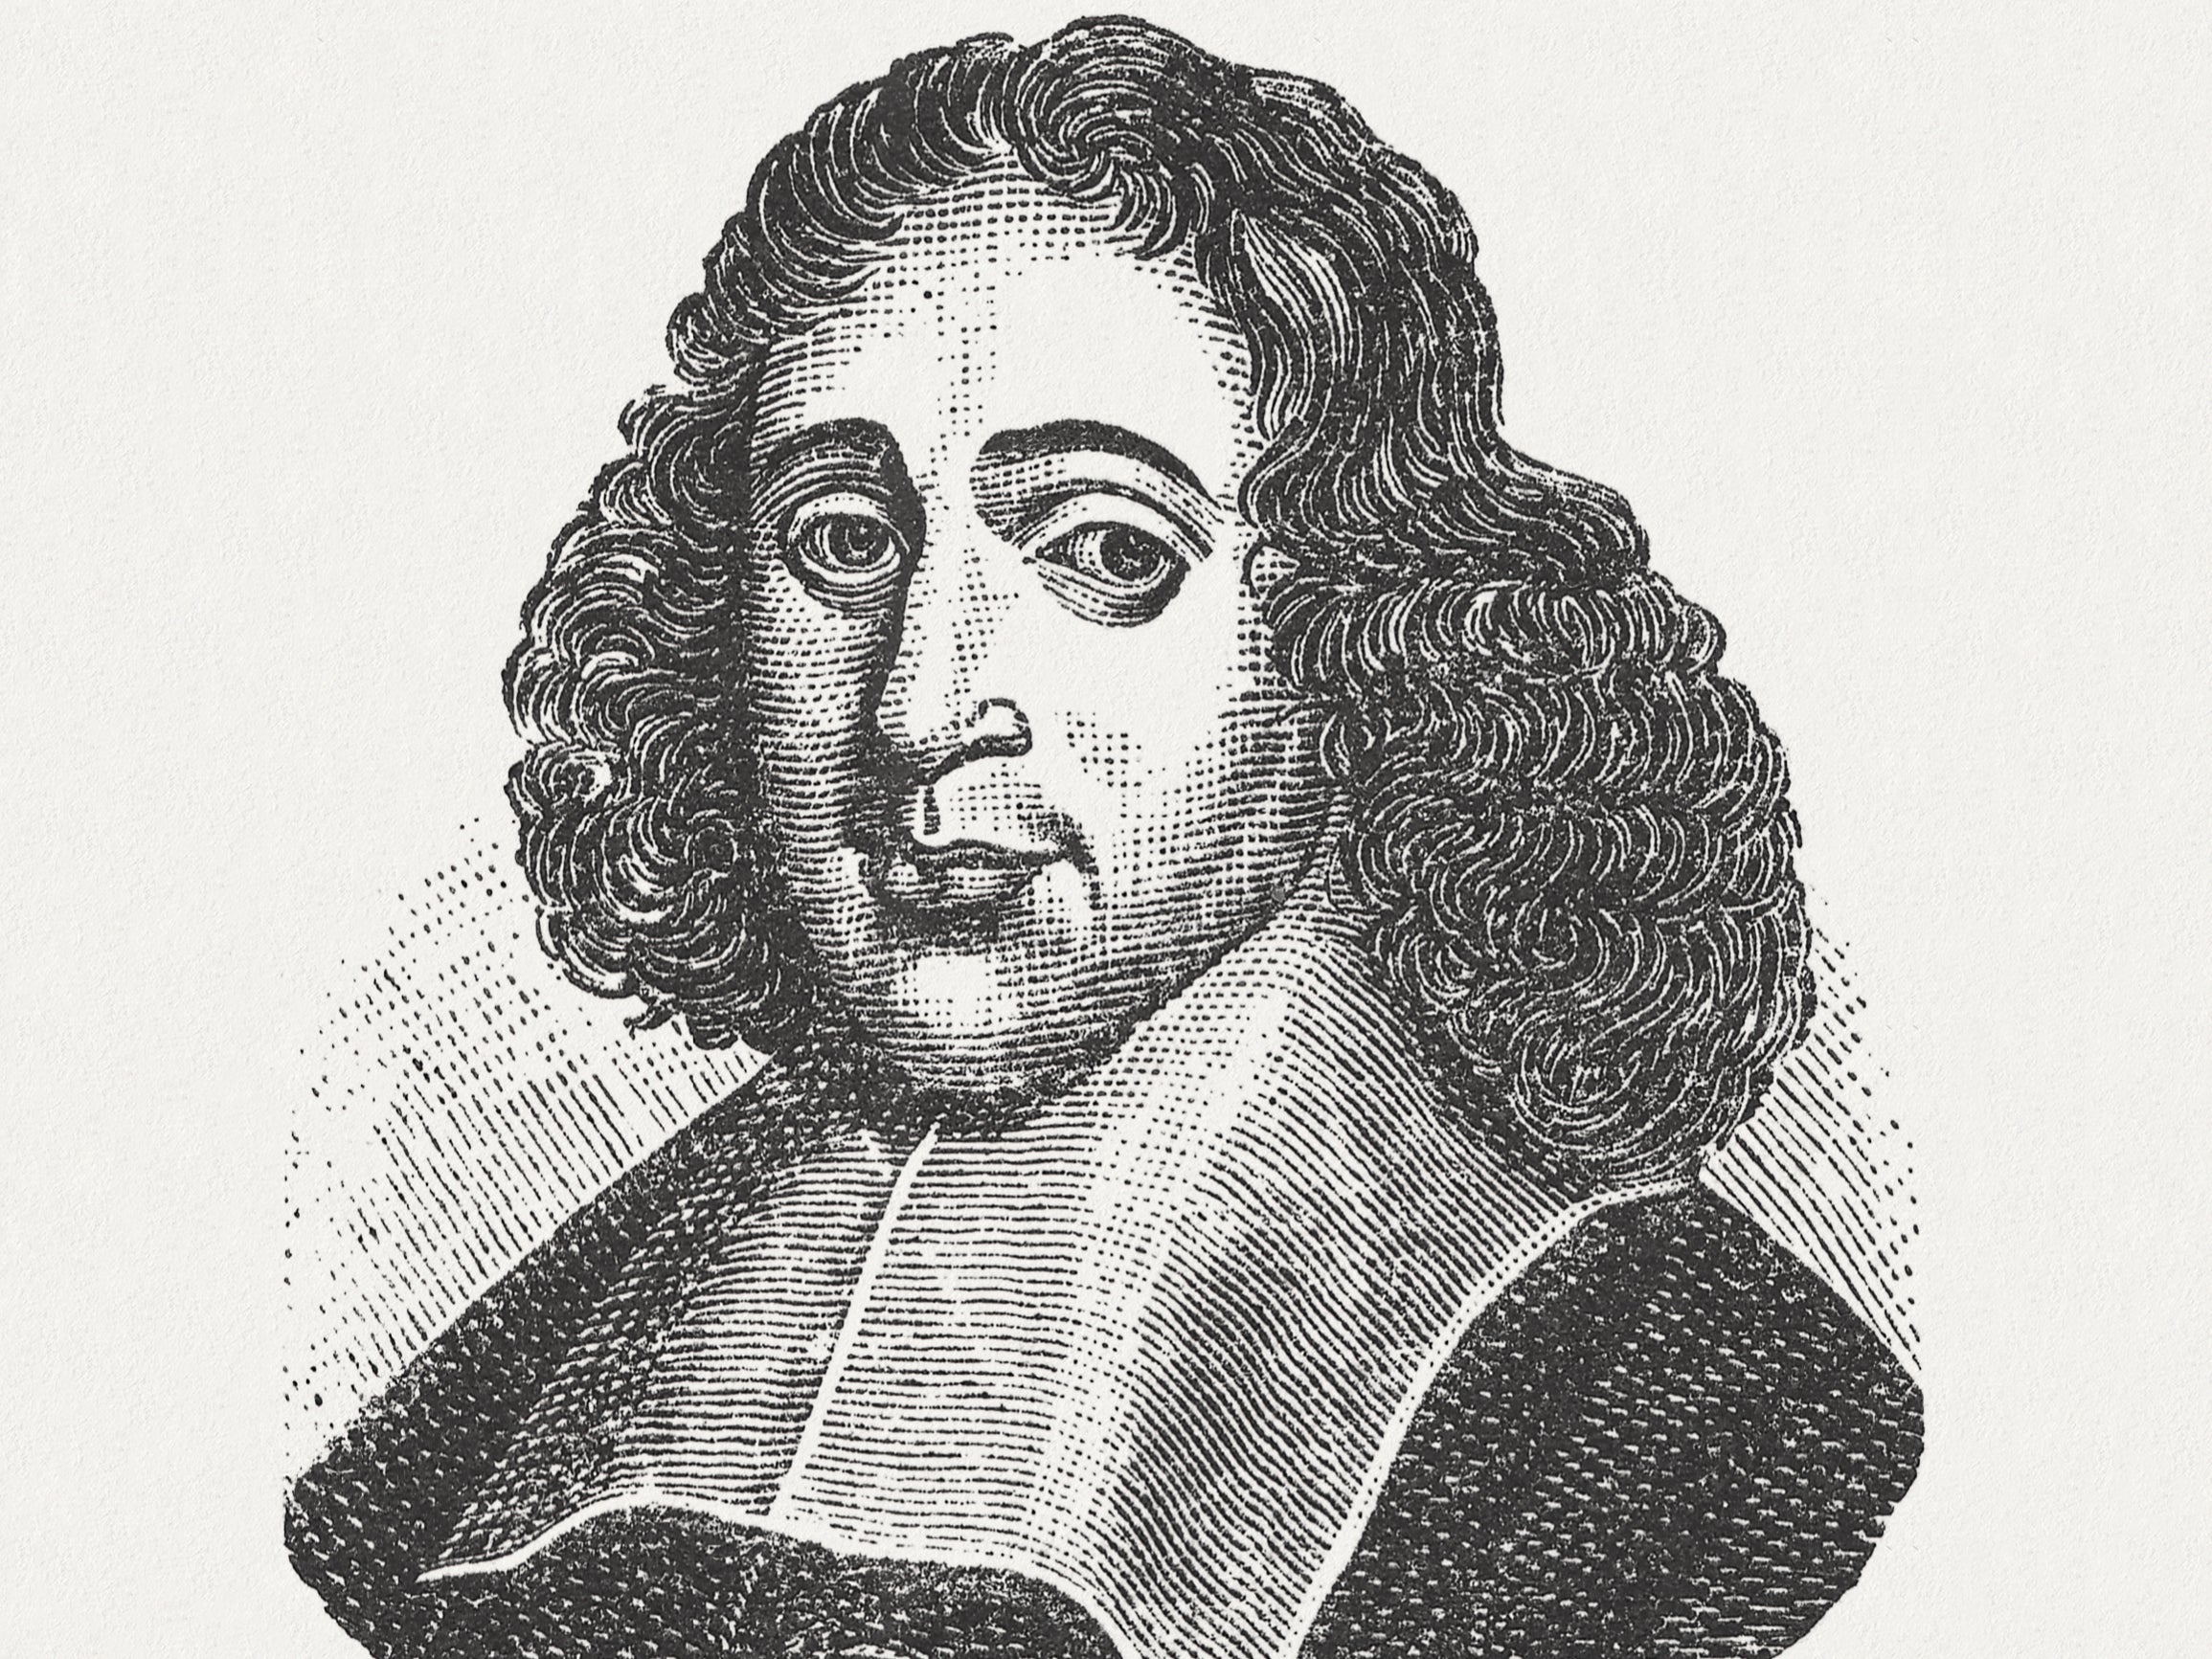 Baruch de Spinoza (1632-1677), Dutch philosopher